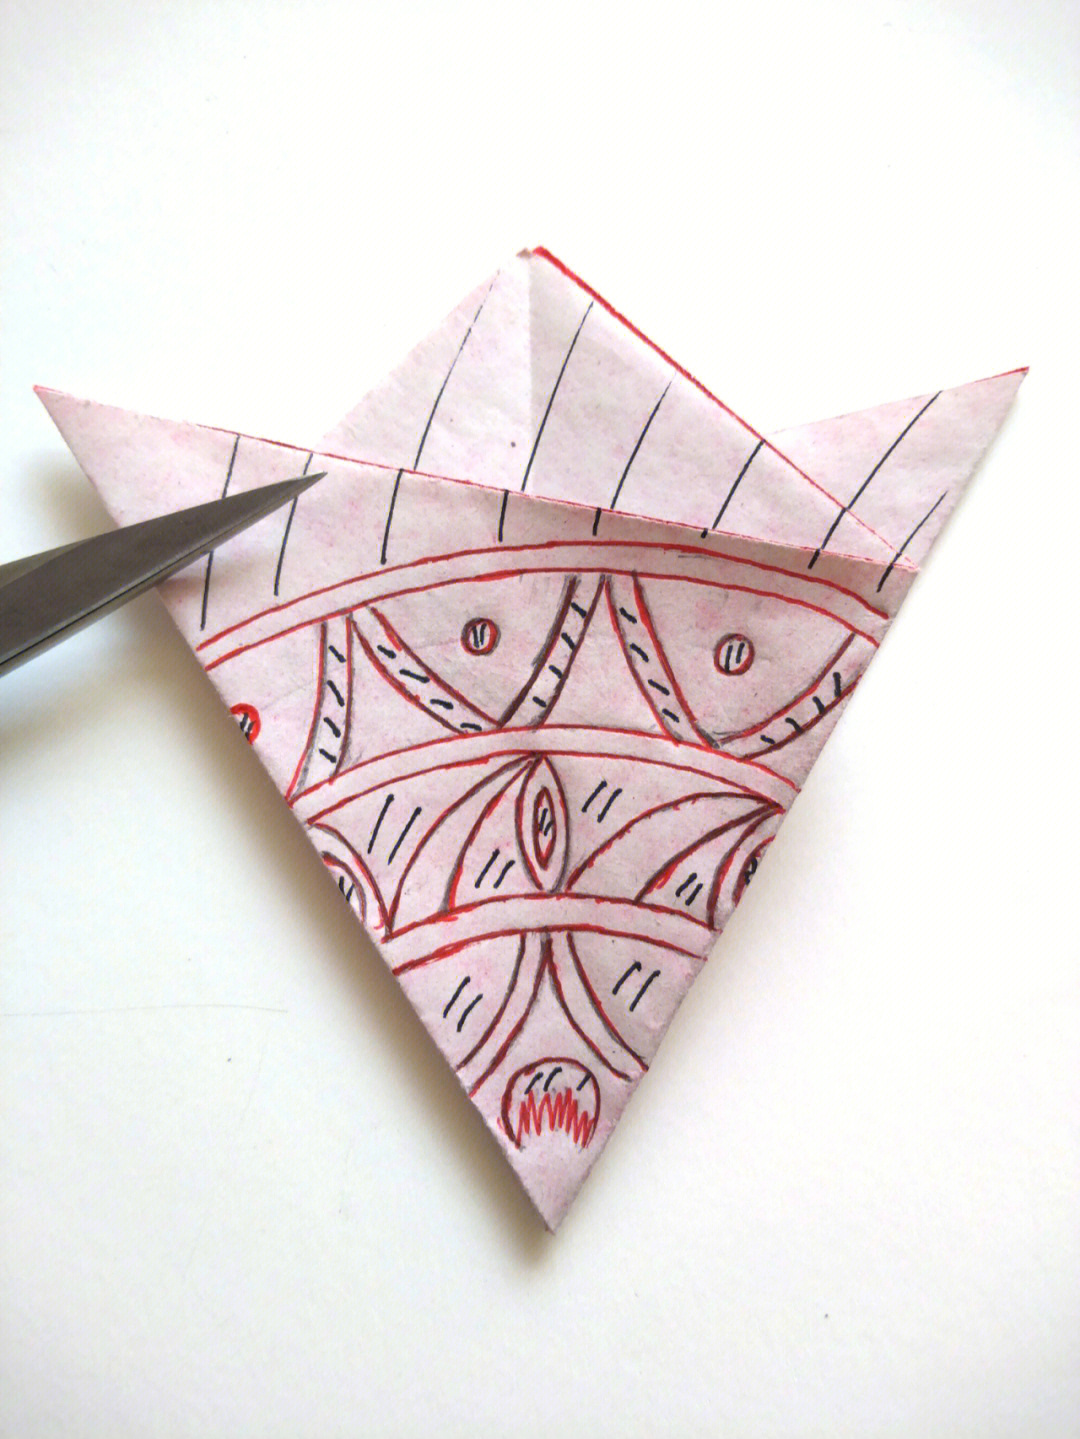 文昌符折三角图片